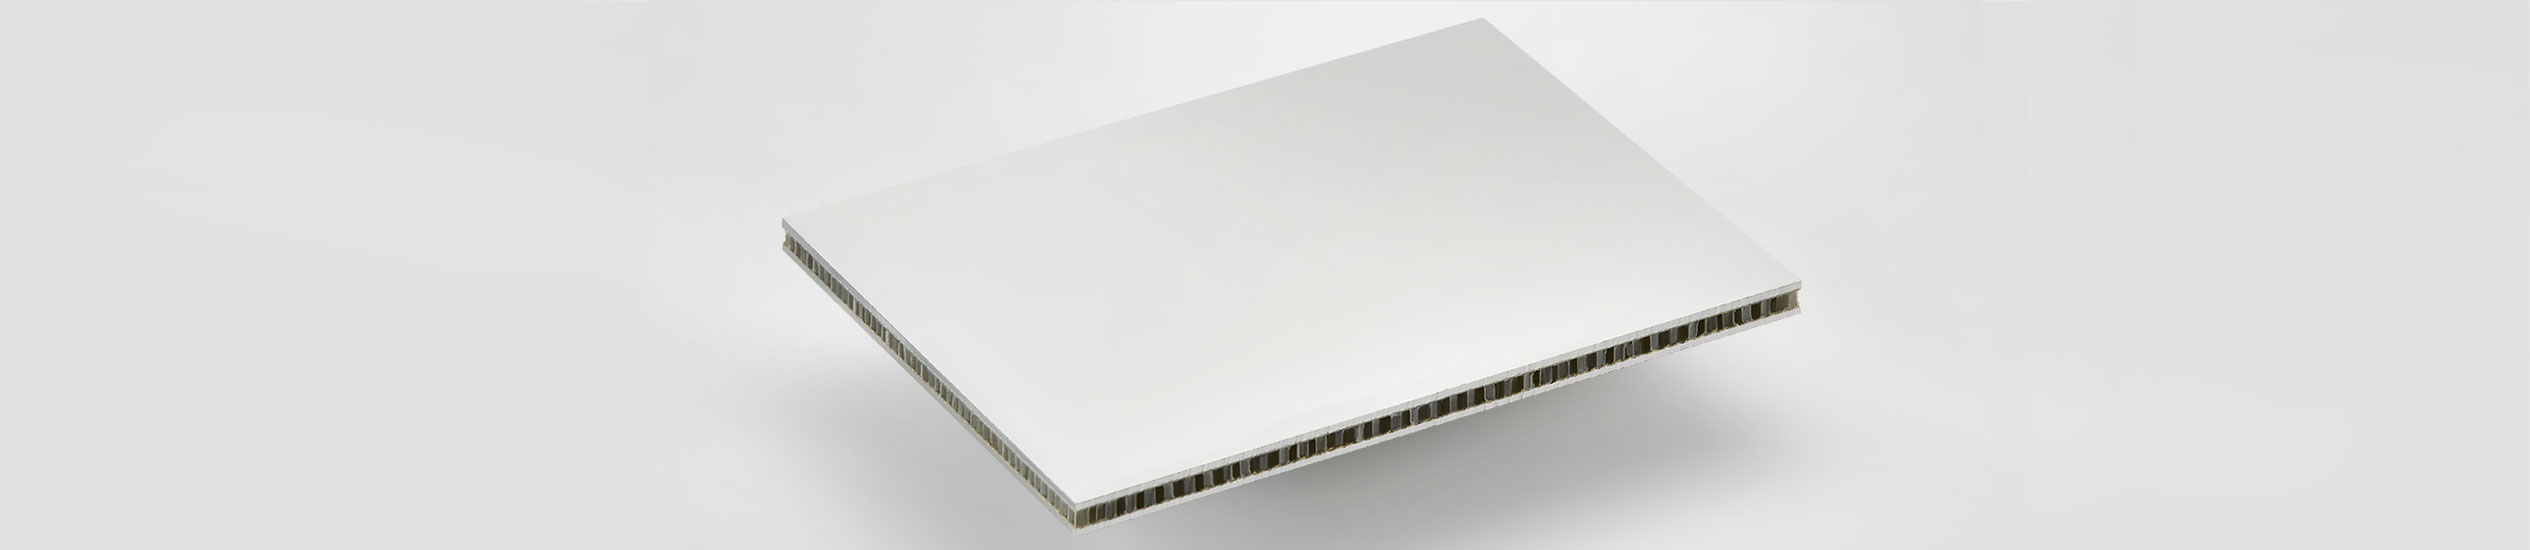 PANEL SANDWICH COMPOCEL®  ALP es un panel sándwich con chapas de aluminio y nùcleo de polipropileno.